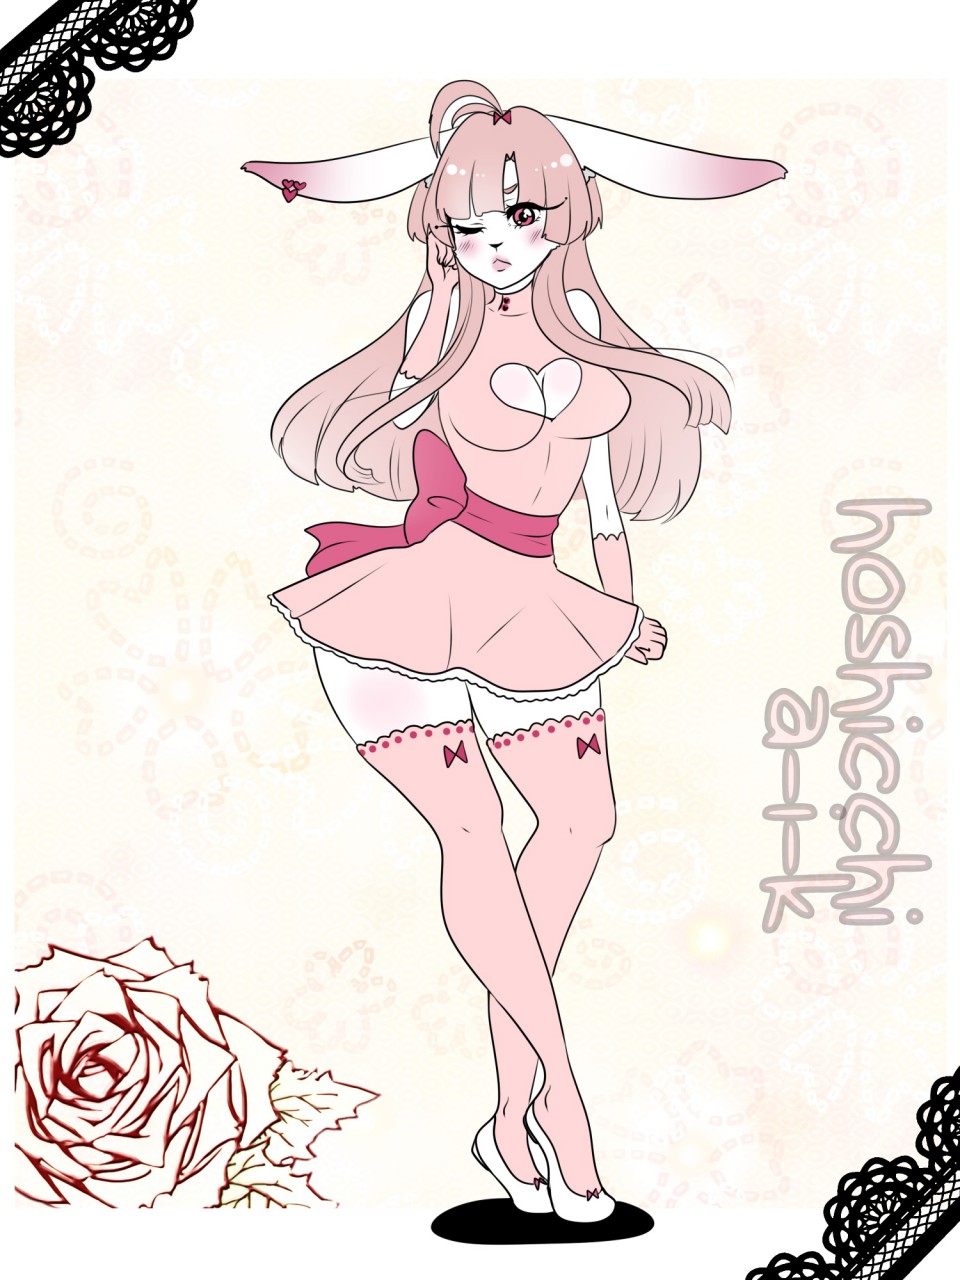 alfie hair hoshicchi lagomorph mammal pink_dress pink_eyes pink_hair pink_stockings rabbit